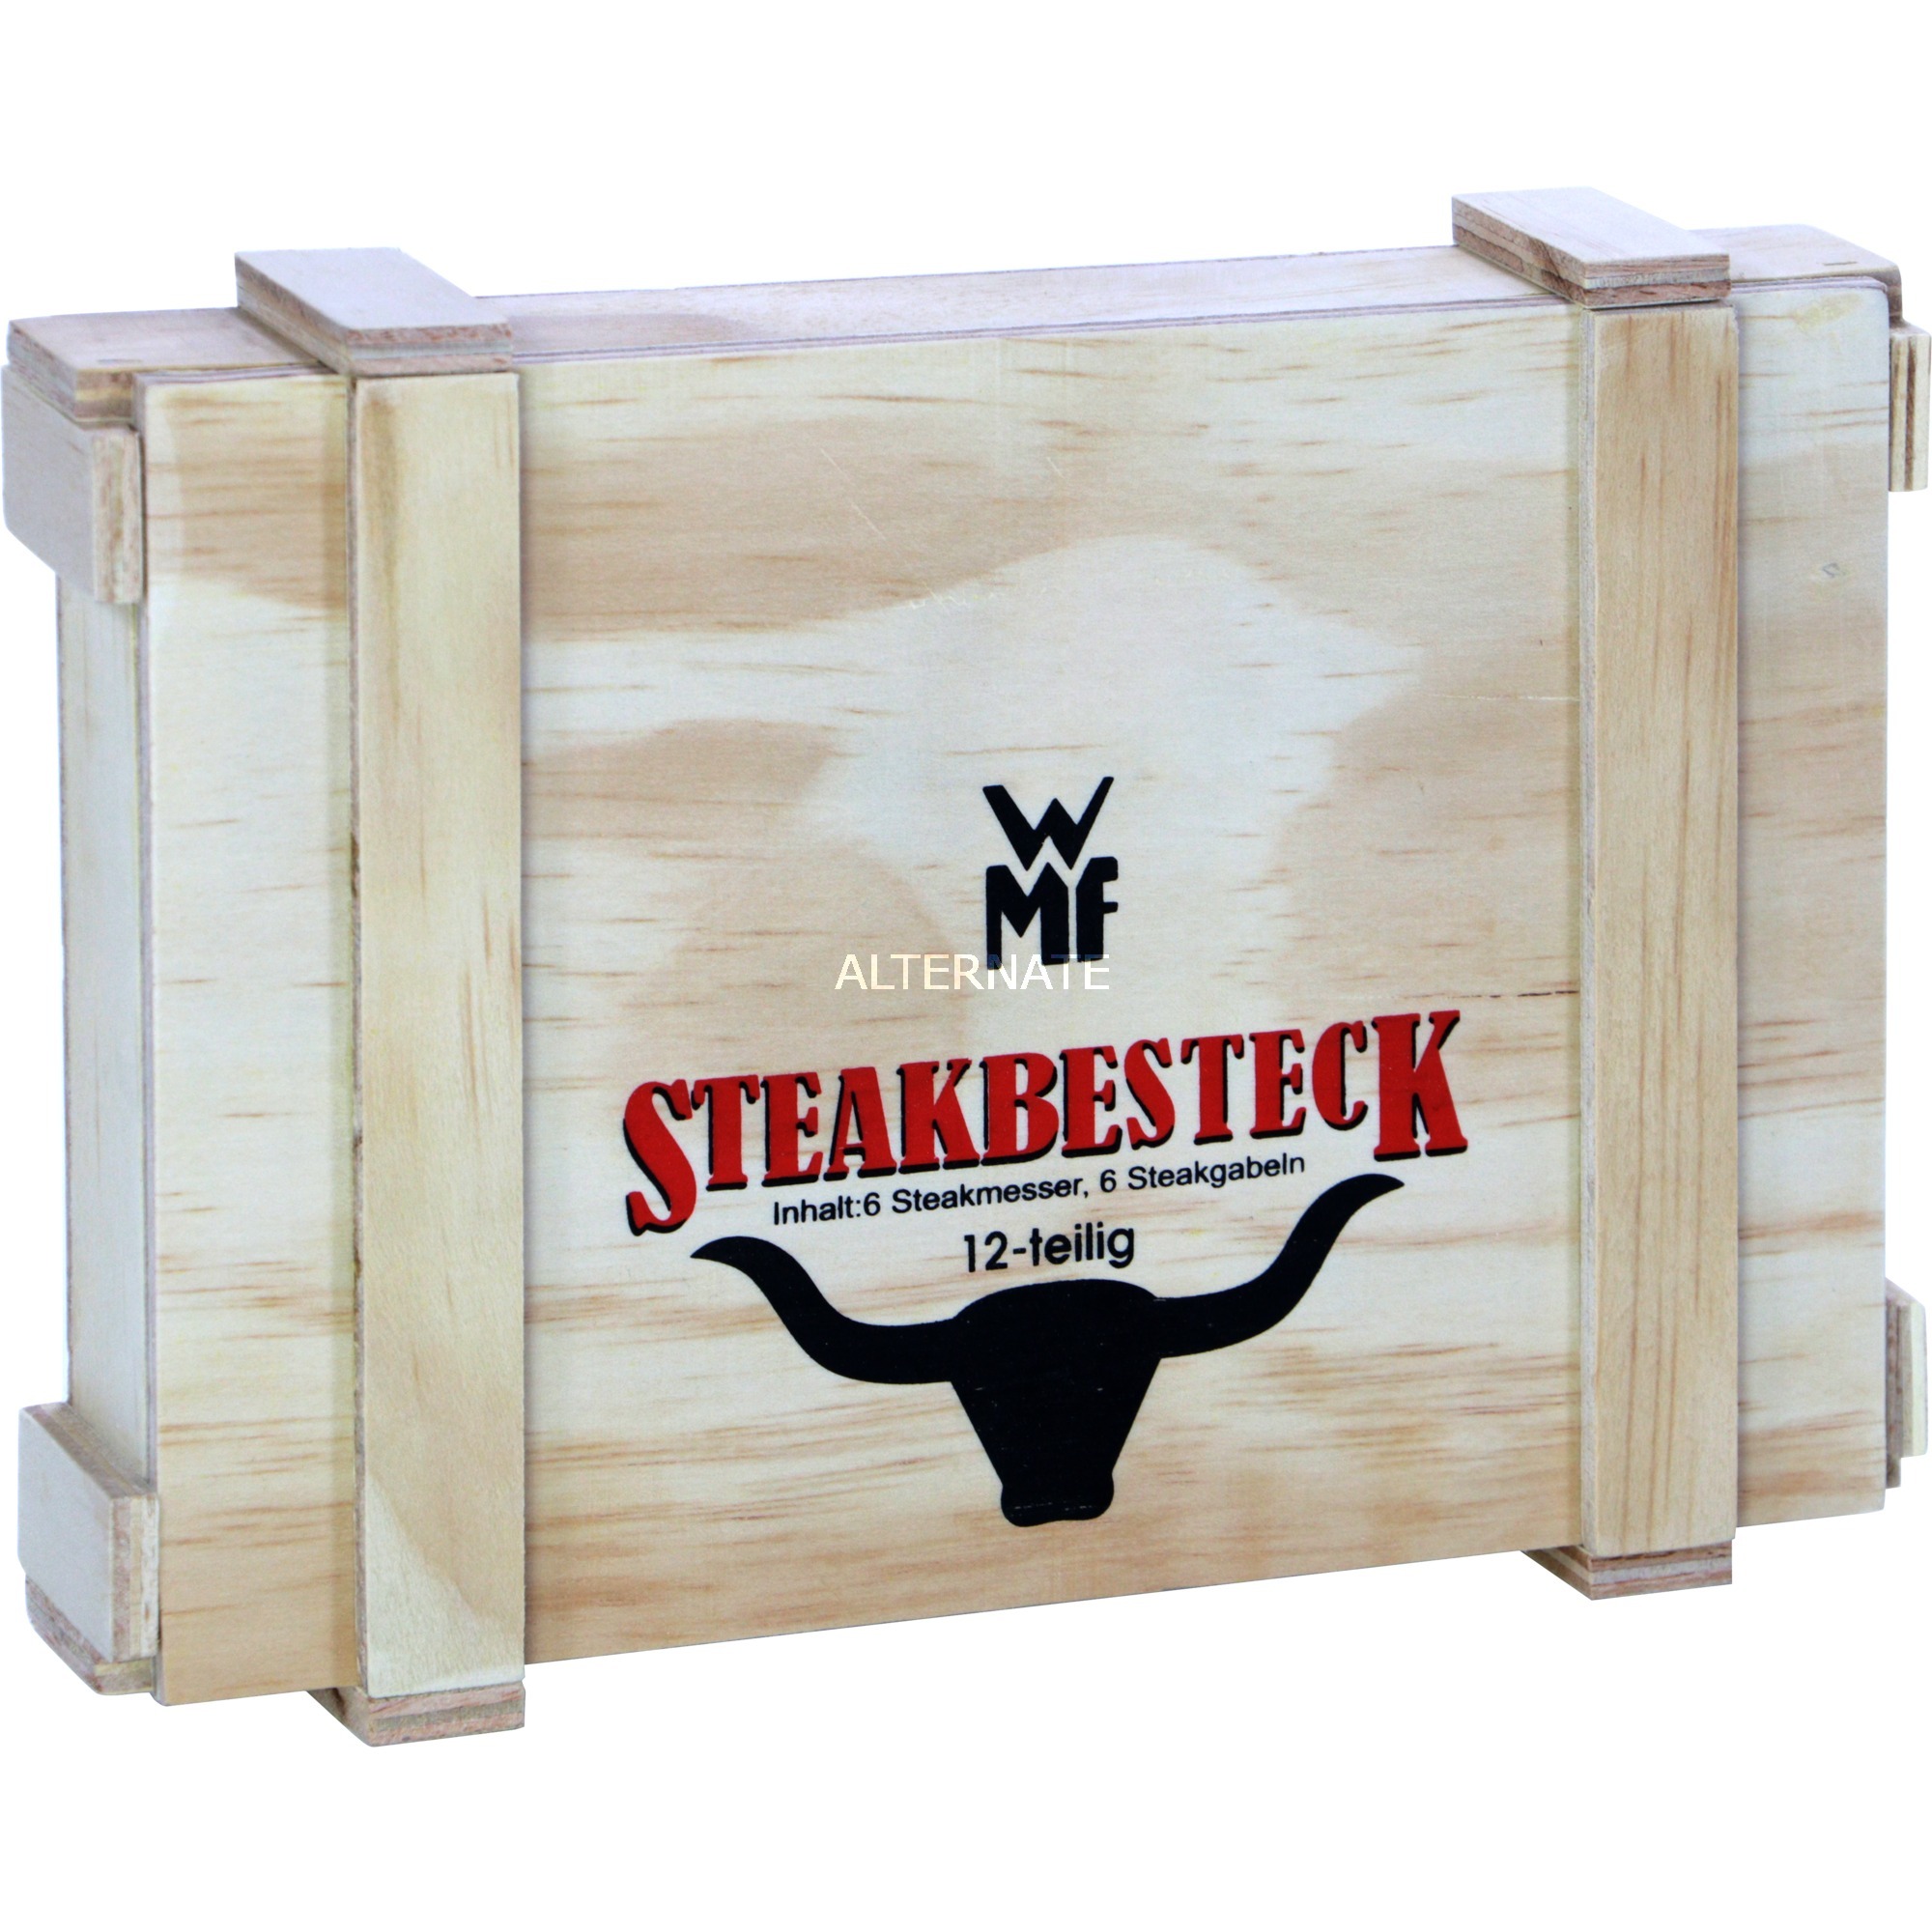 Image of Alternate - Steakbesteck-Set Nuova, 12-teilig online einkaufen bei Alternate